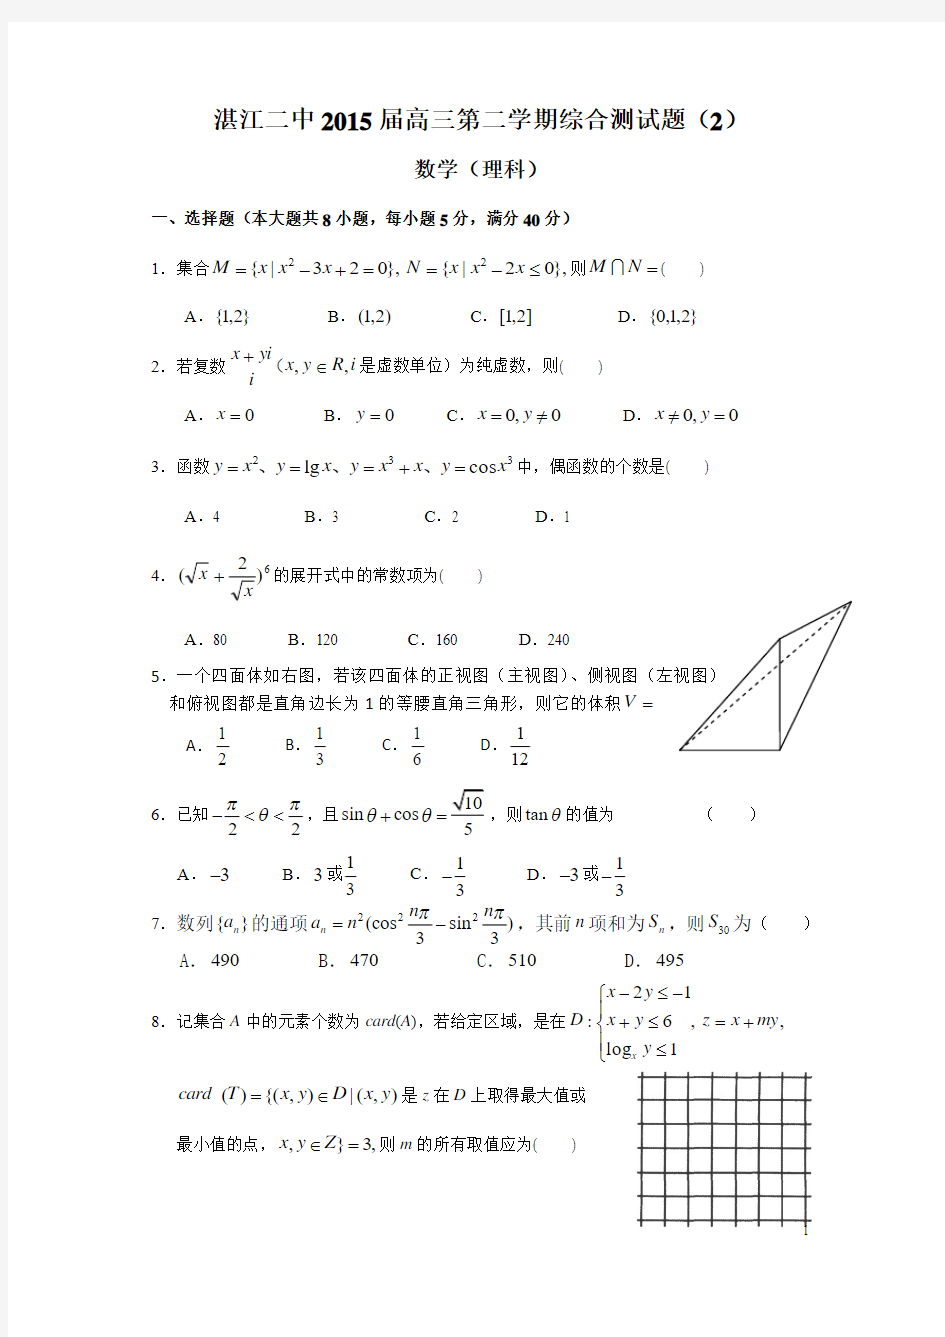 湛江二中2015届高三第二学期综合测试题(2)